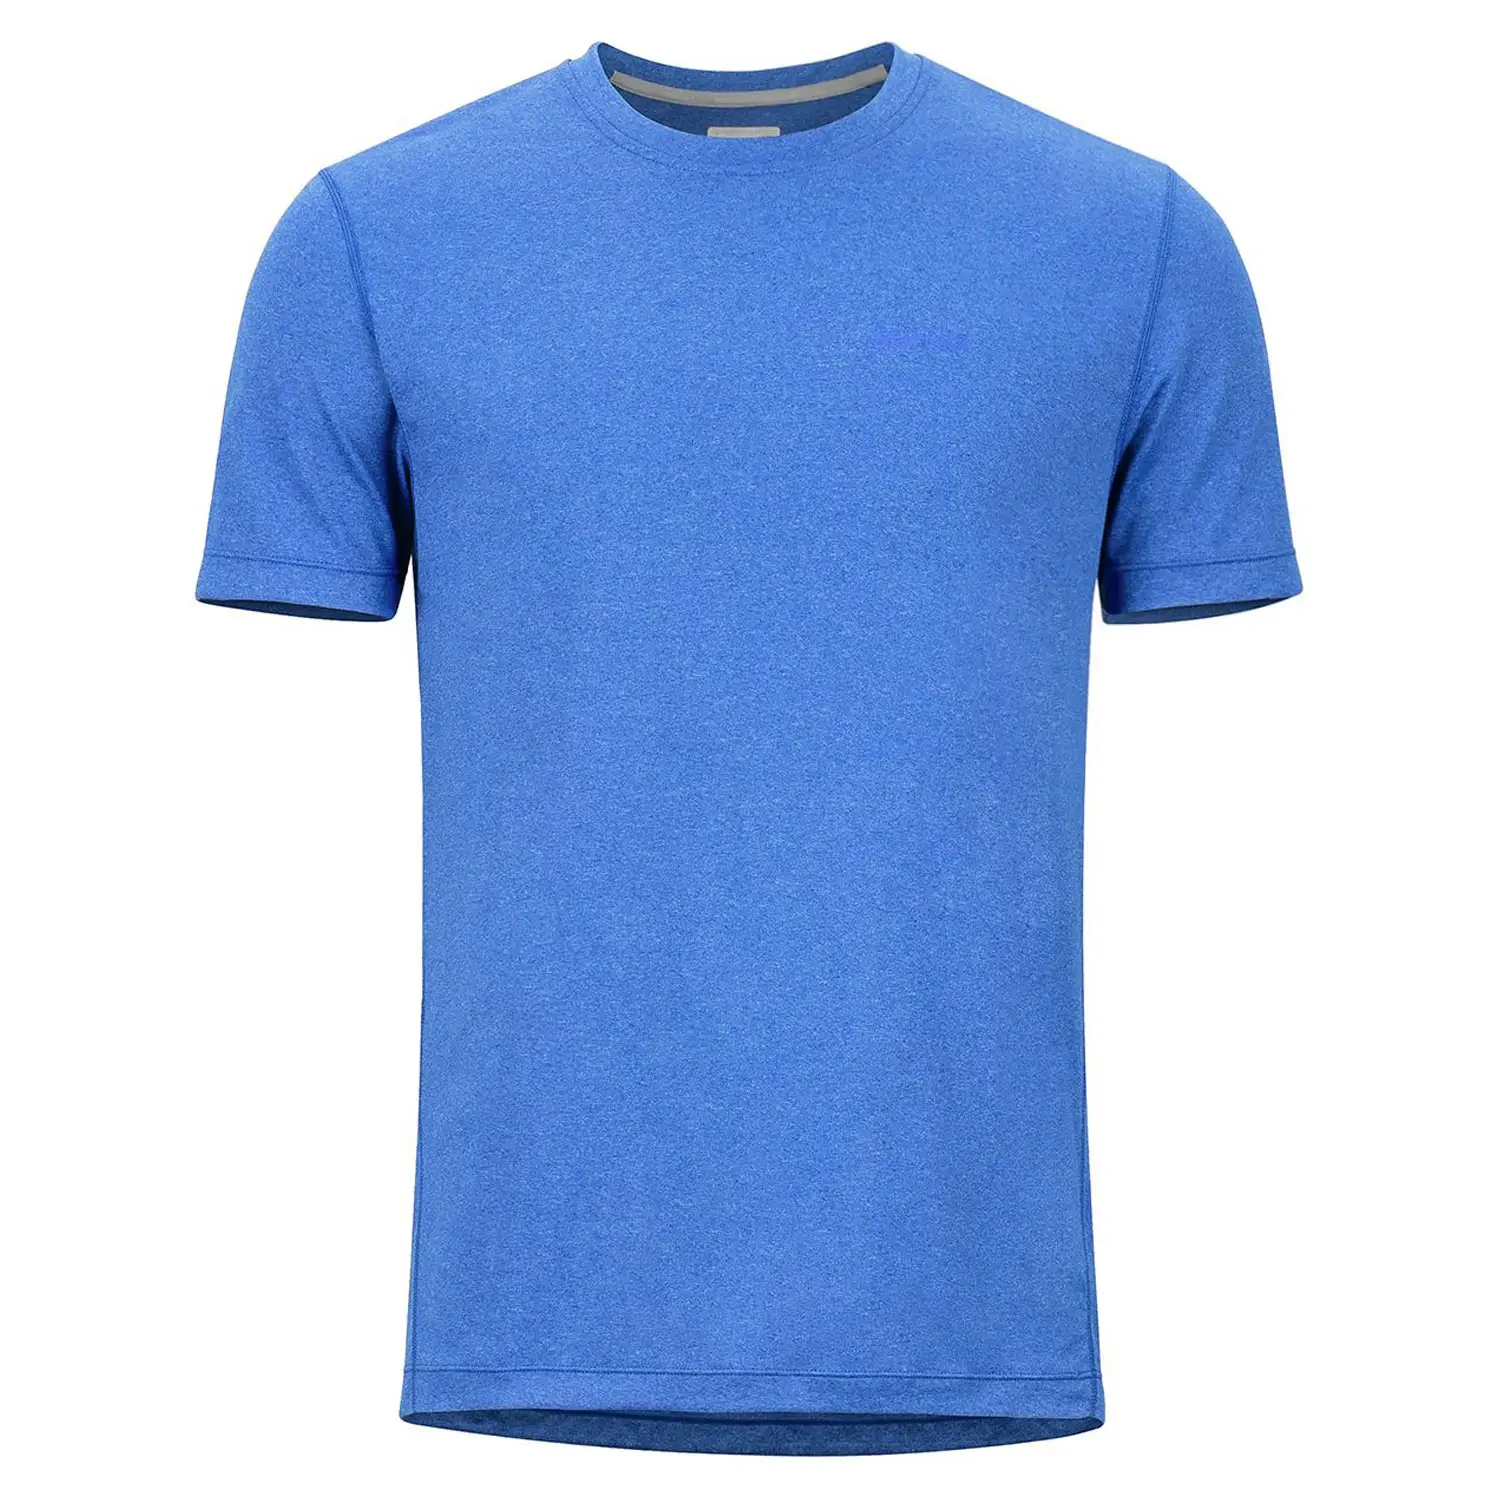 Prezzo a buon mercato 100% da uomo in poliestere rapido asciutto T-Shirt personalizzata stampa a sublimazione con Logo Unisex sport da uomo T-Shirt